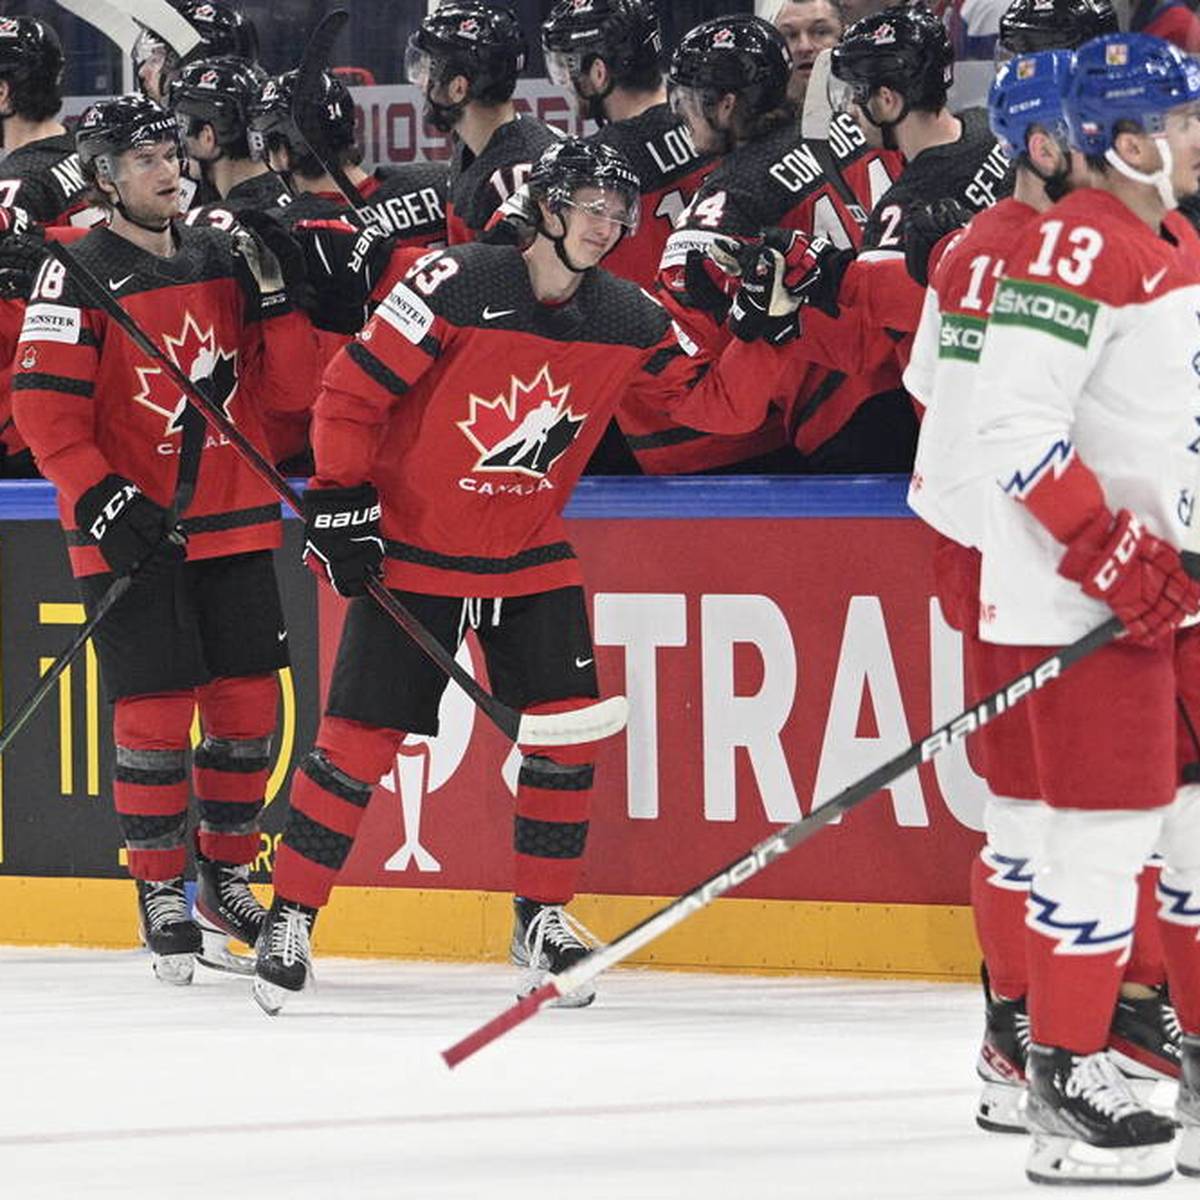 Im Eishockey-Halbfinale setzt sich Kanada trotz eines frühen Gegentores deutlich gegen Tschechien durch. Vier spektakuläre Minuten entscheiden das Spiel.